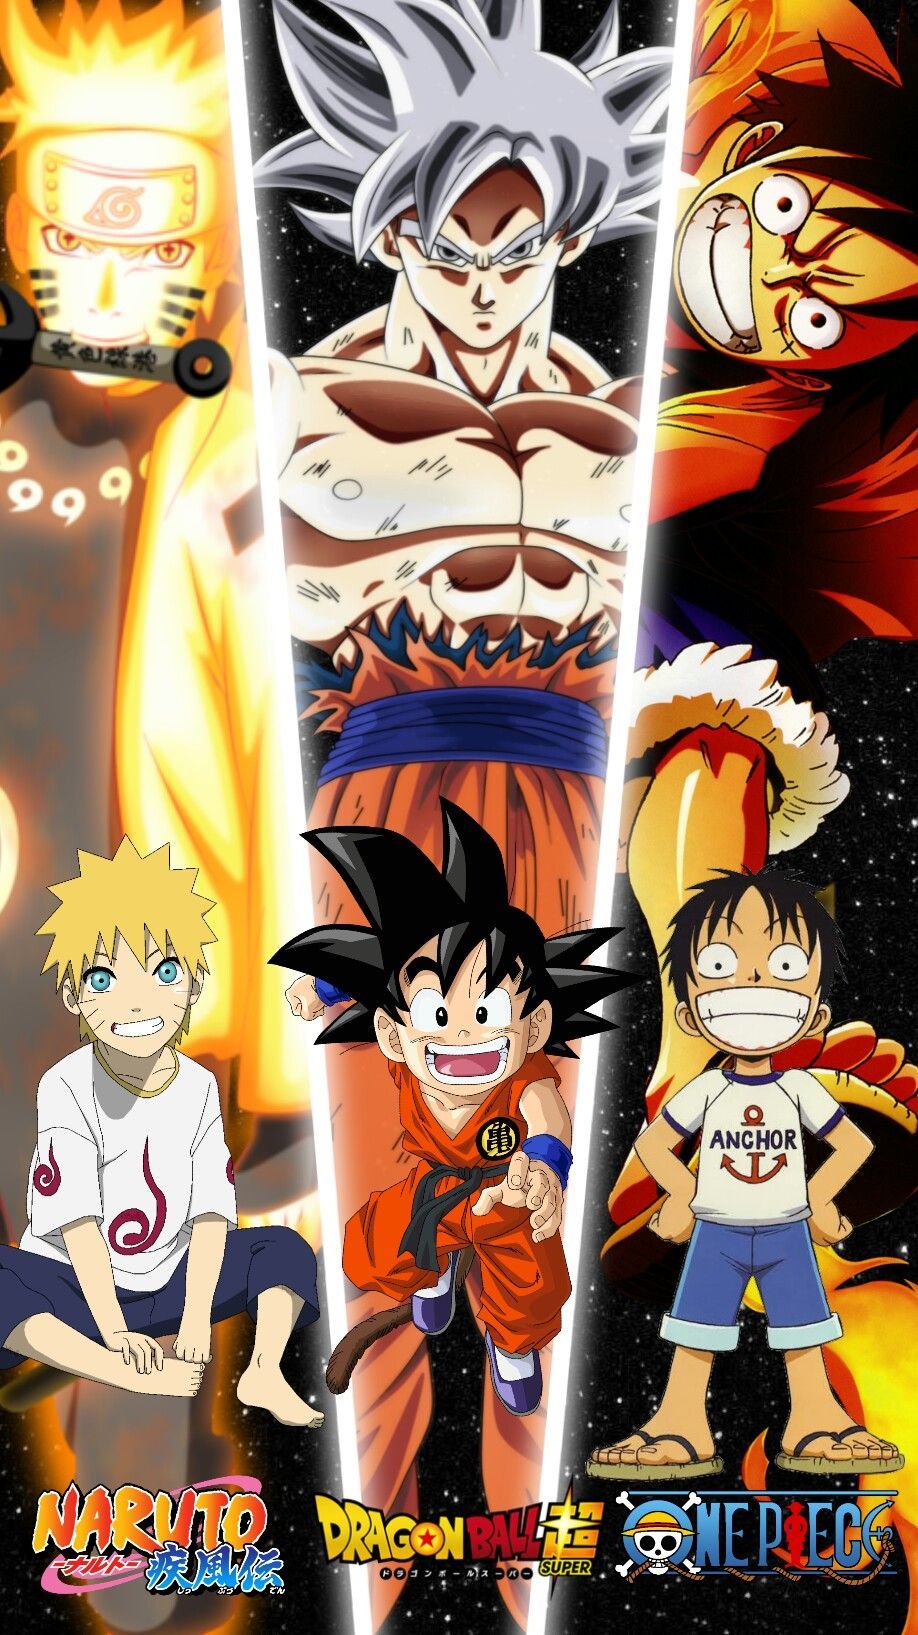 Naruto Luffy hình nền - Hãy cùng khám phá thế giới đầy huyền bí và phiêu lưu của hai nhân vật anime được yêu thích nhất là Naruto và Luffy với những hình nền đẹp mắt đang chờ bạn khám phá.